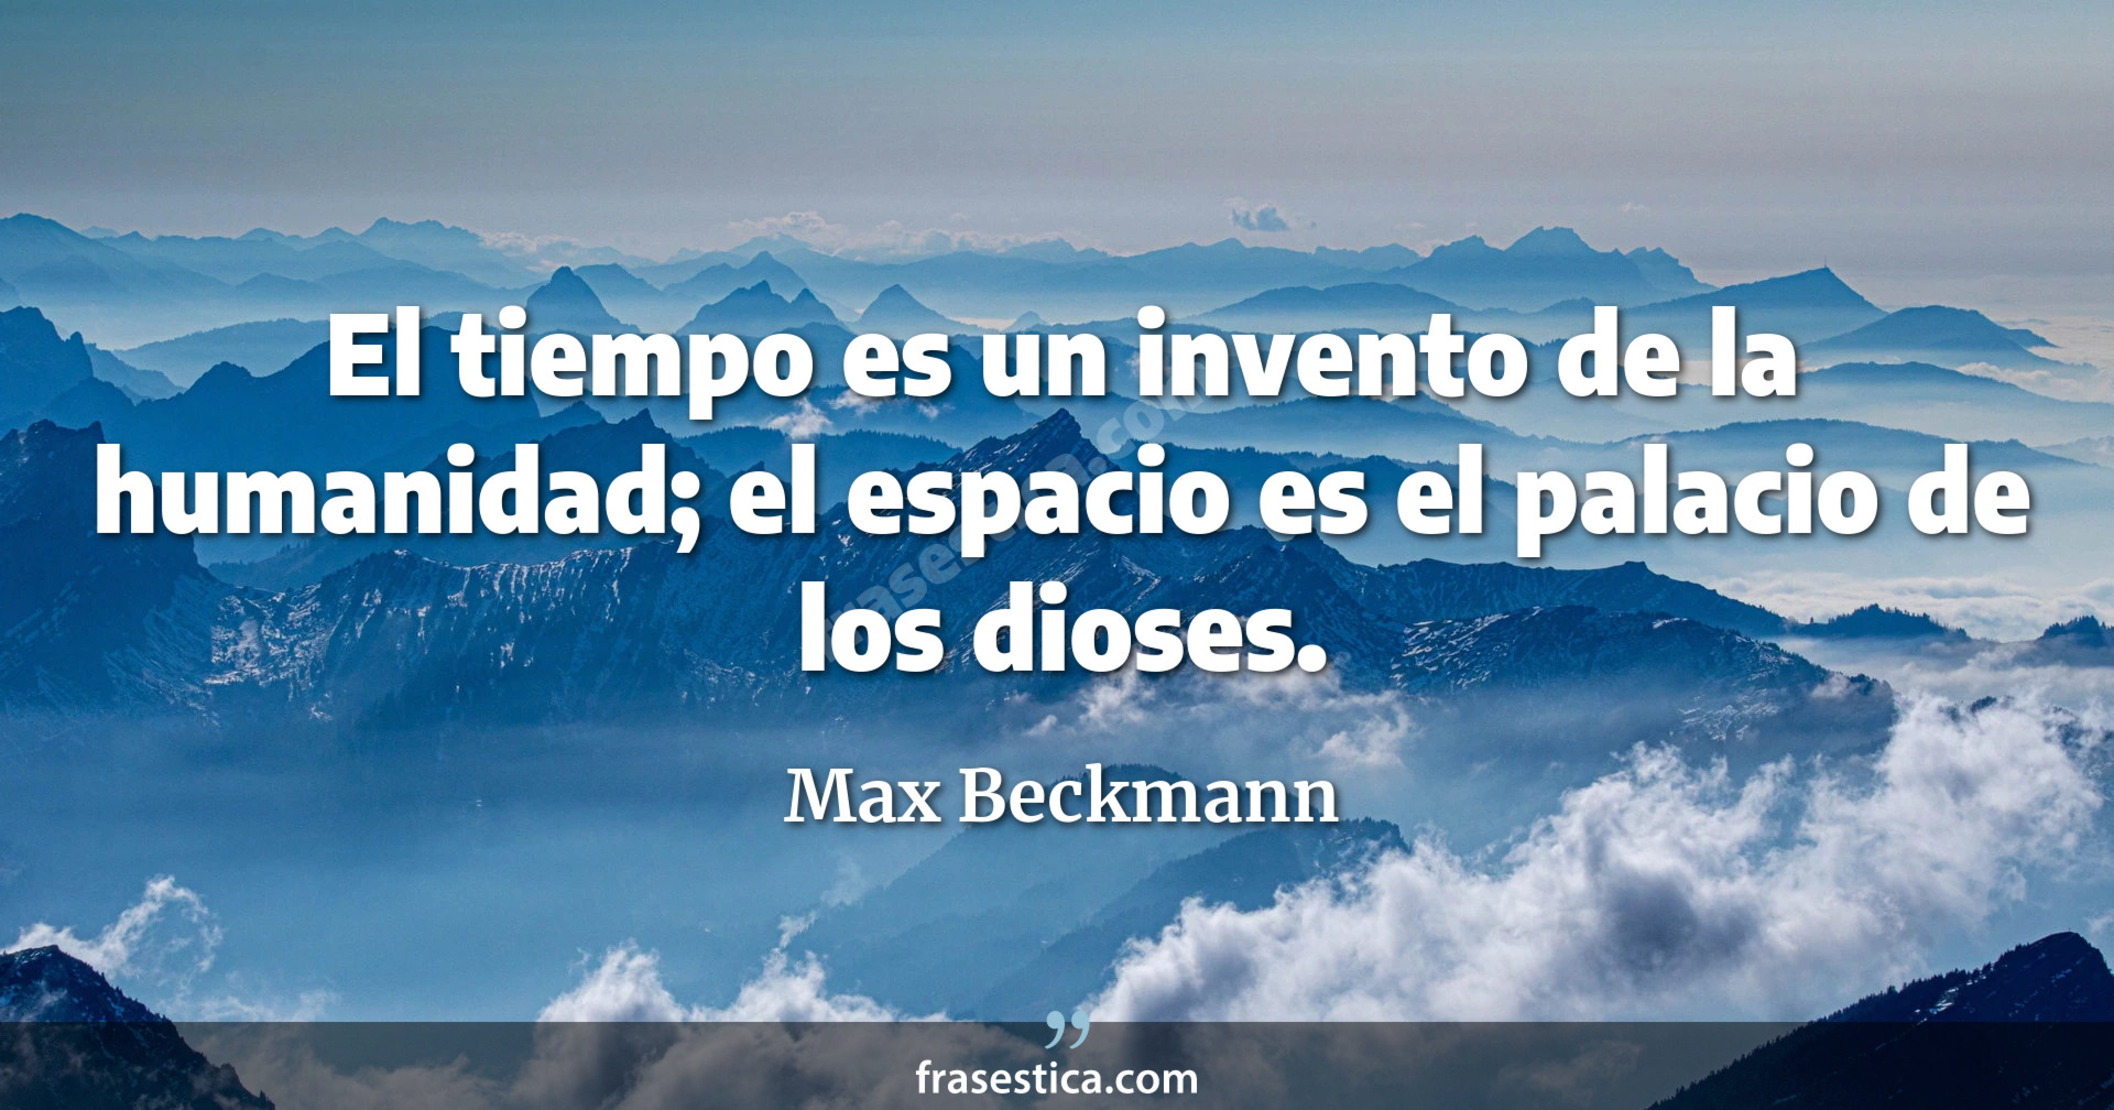 El tiempo es un invento de la humanidad; el espacio es el palacio de los dioses. - Max Beckmann